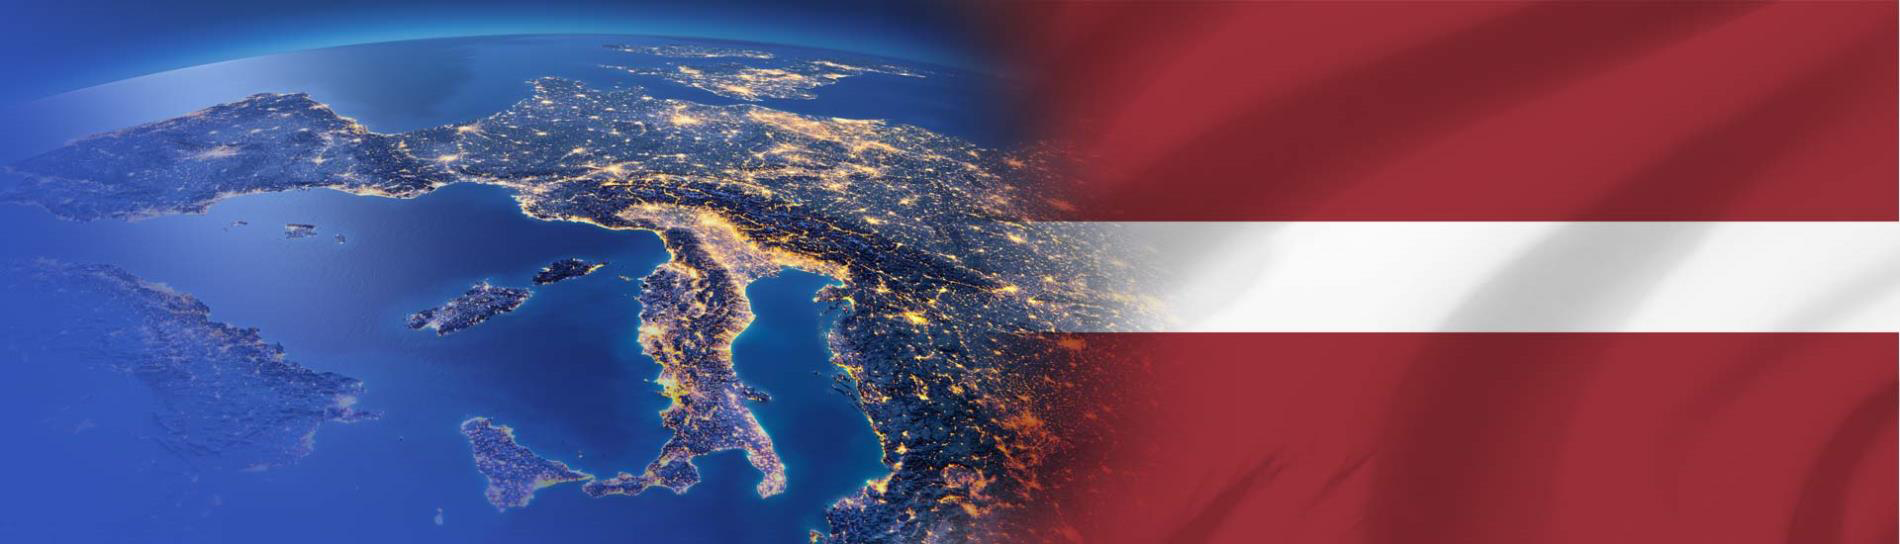 Լատվիայի դրոշը եվրոպական մայրցամաքում